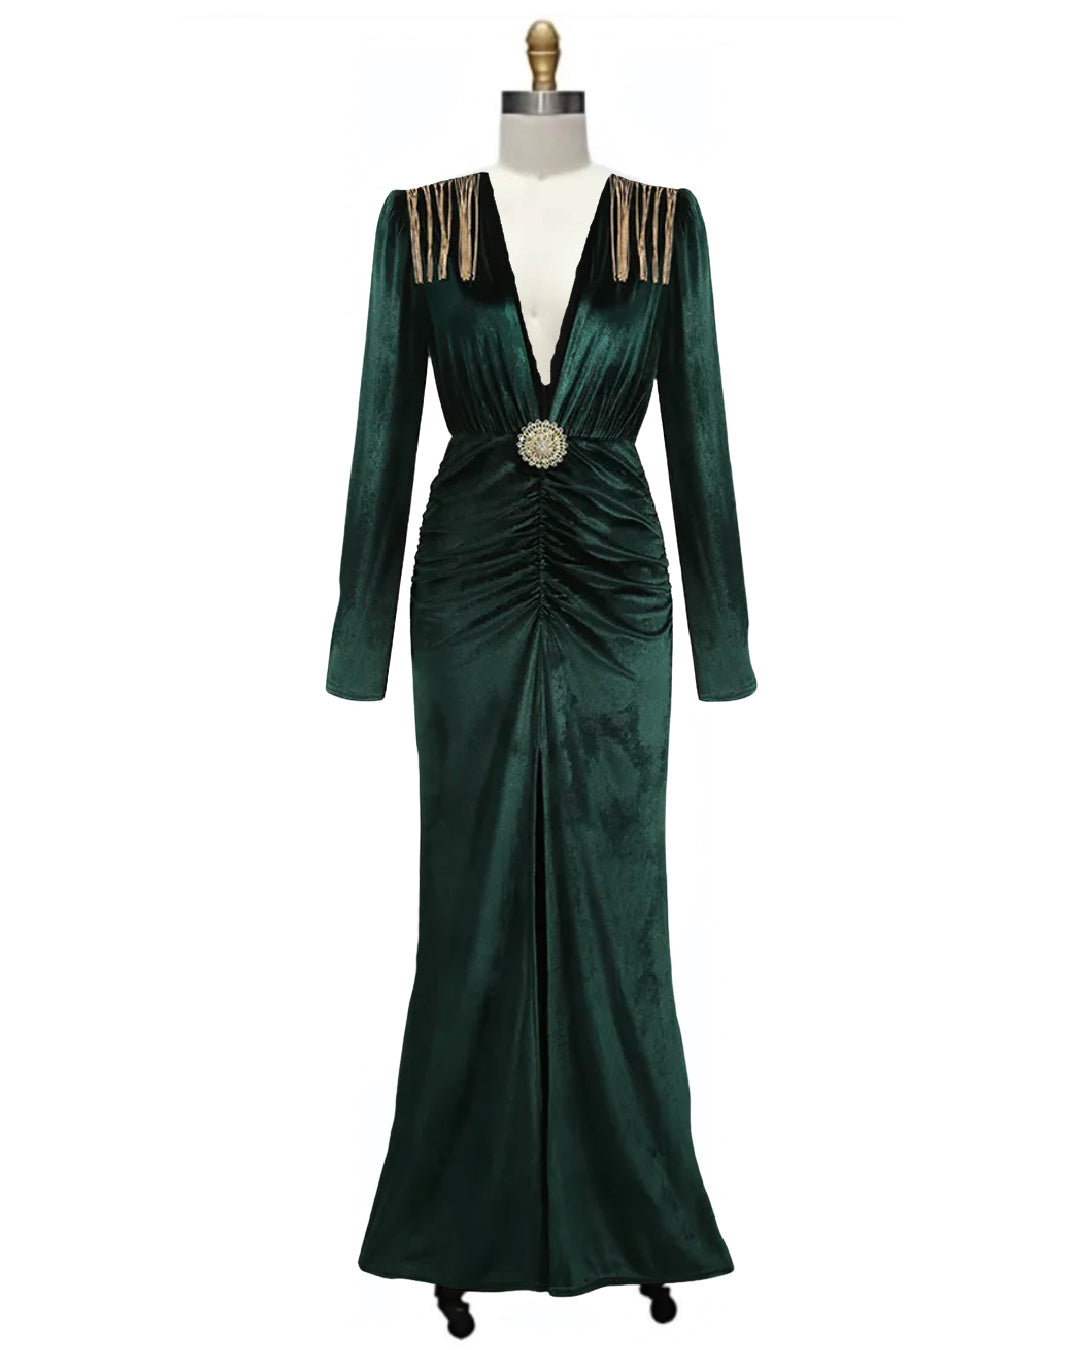 Joan- the 1940s Inspired Velvet Dress with Fringed Shoulders